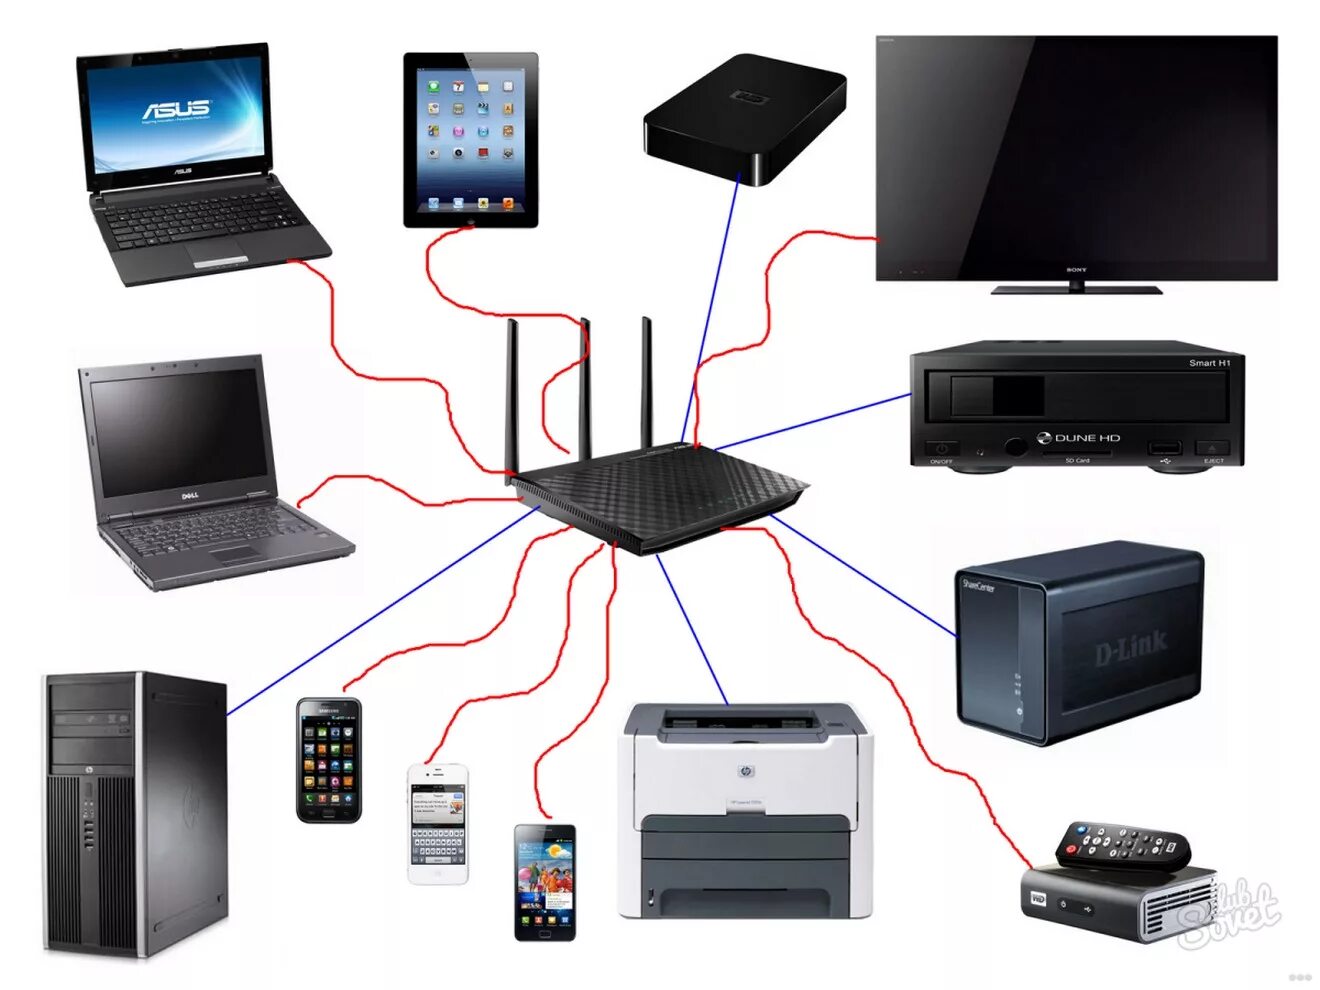 Как соединить телевизором с wifi. Маршрутизатор Wi Fi сеть ПК. Домашняя локальная сеть через WIFI роутер. 2 ПК,5 ноутбуков, файерволл, Wi-Fi роутер, сервер сетевая диаграмма. Маршрутизатор для проводной локальной сети.